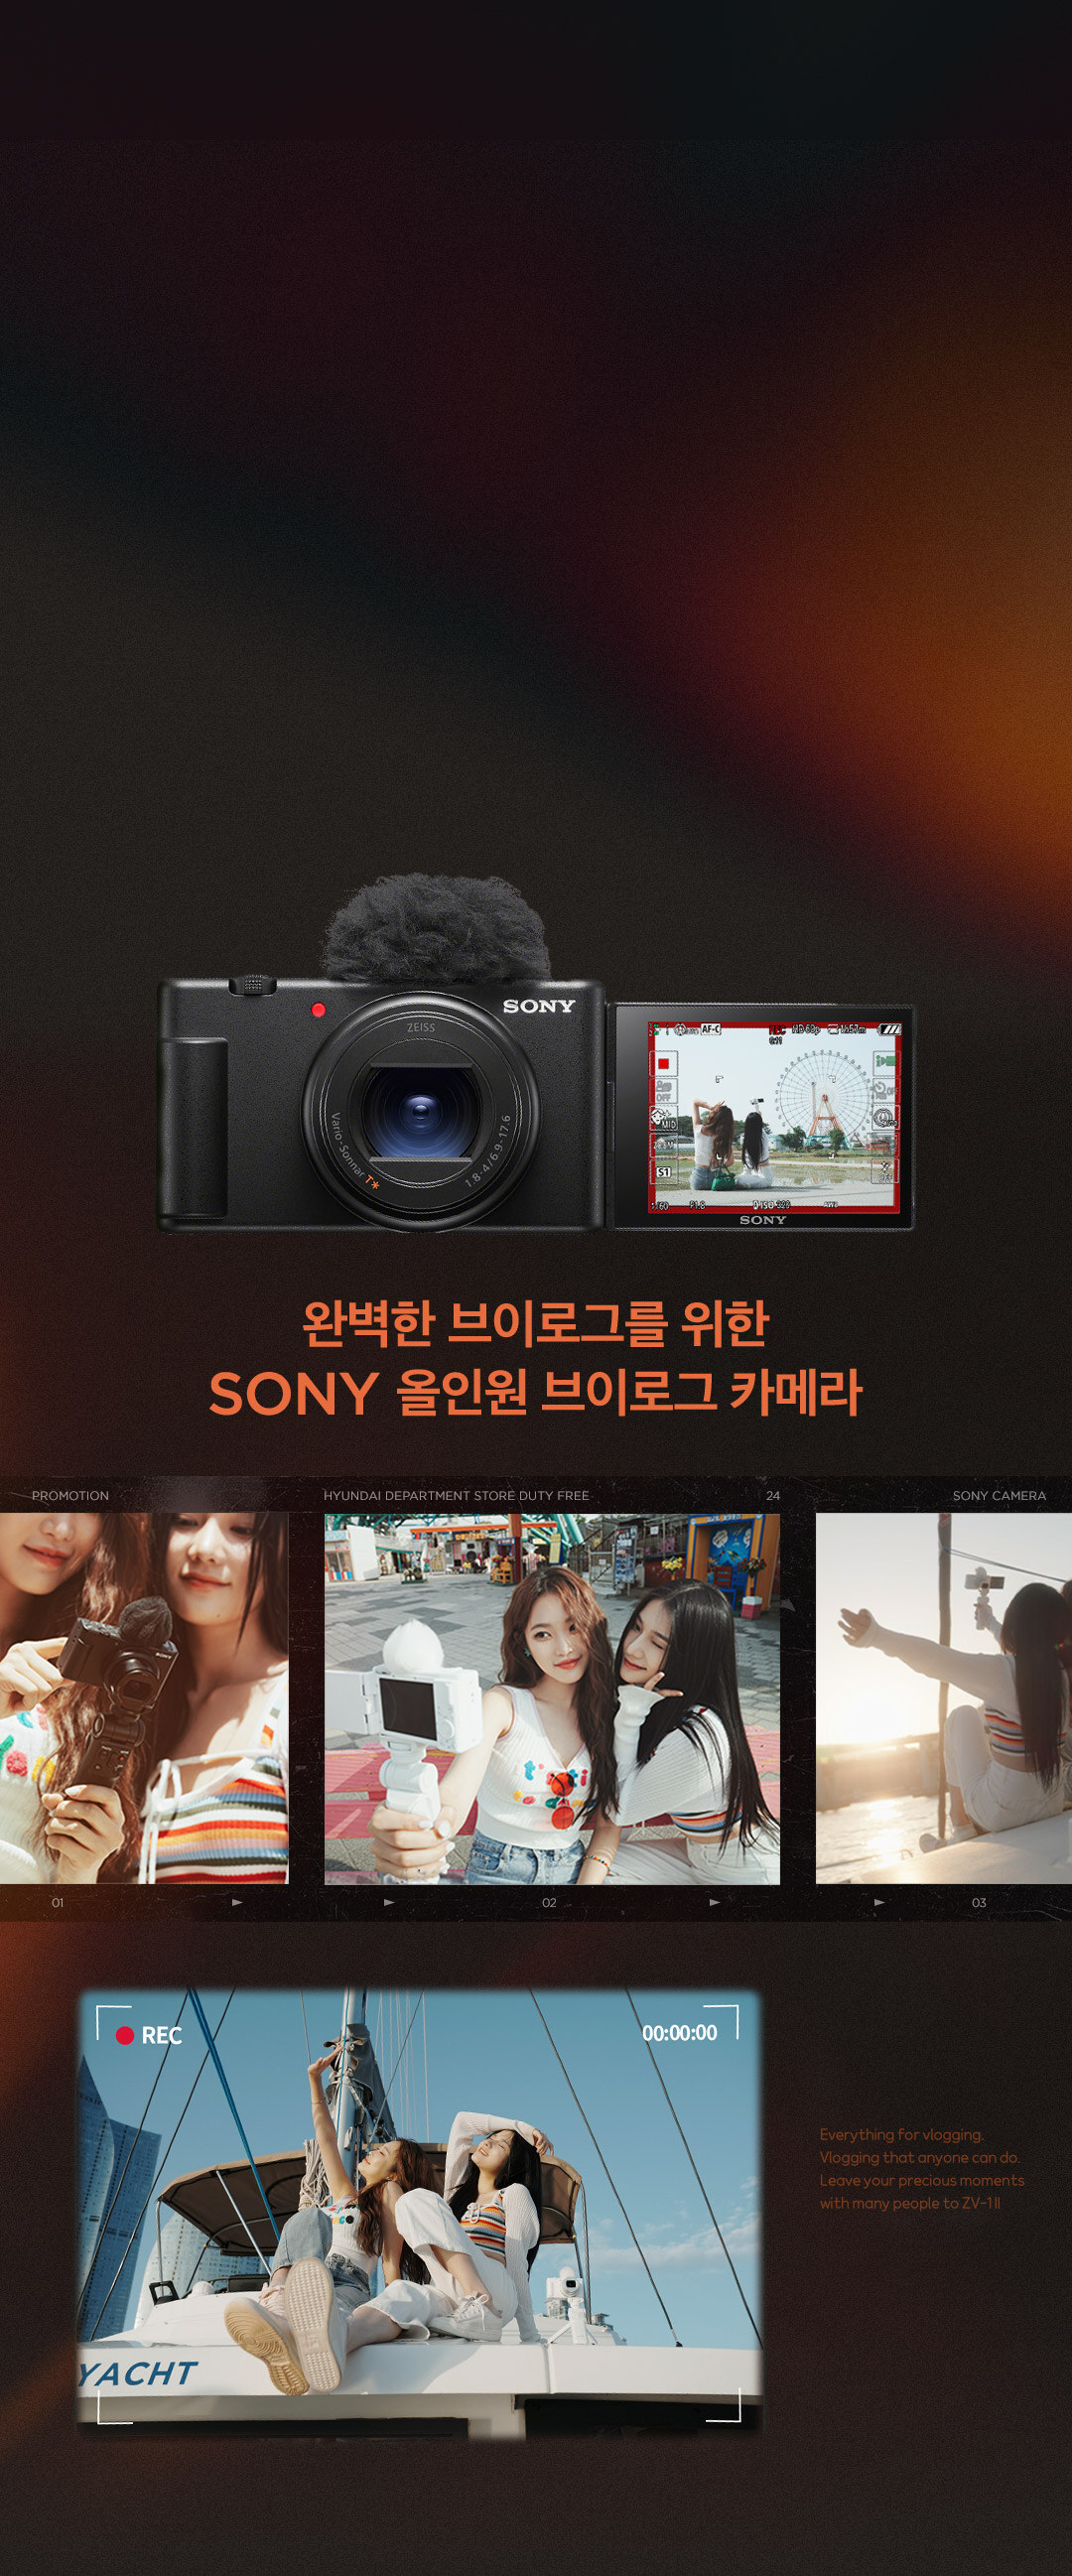 완벽한 브이로그를 위한 SONY 올인원 브이로그 카메라